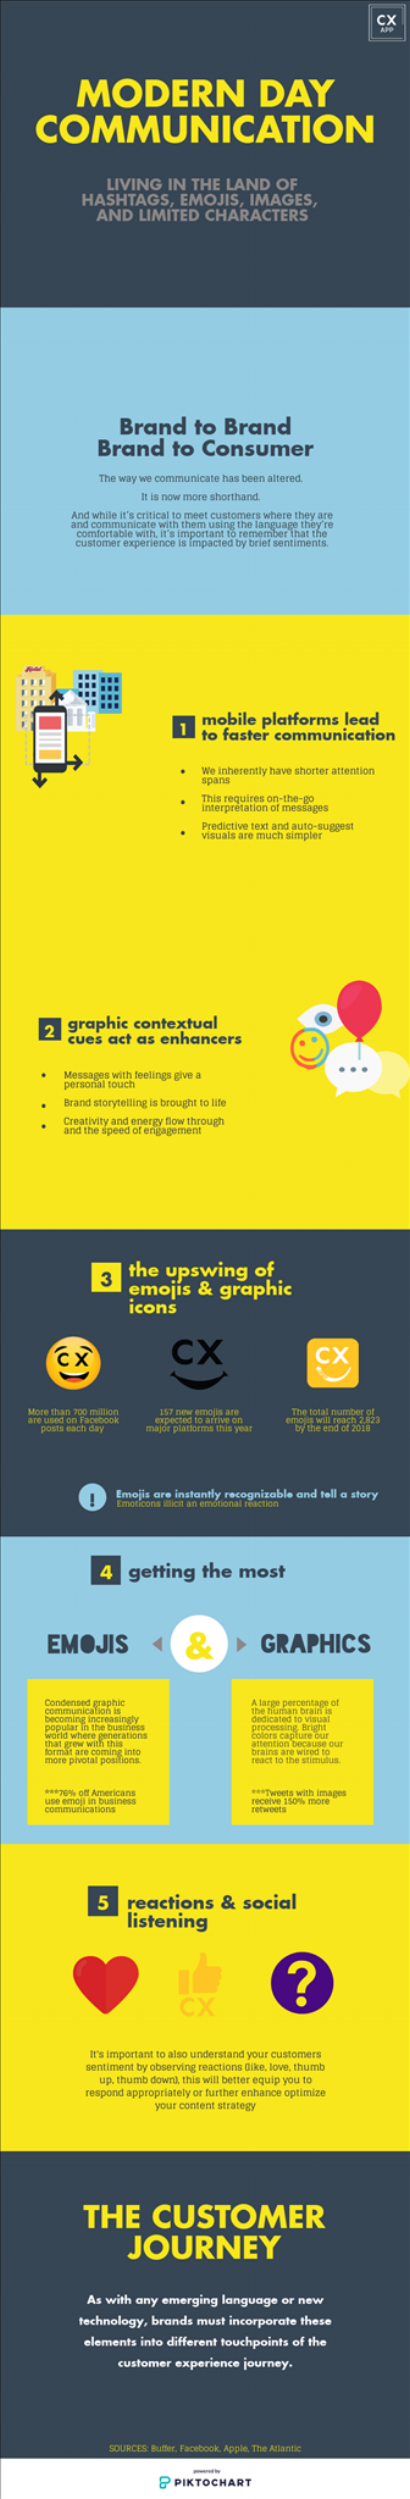 Emojis communication